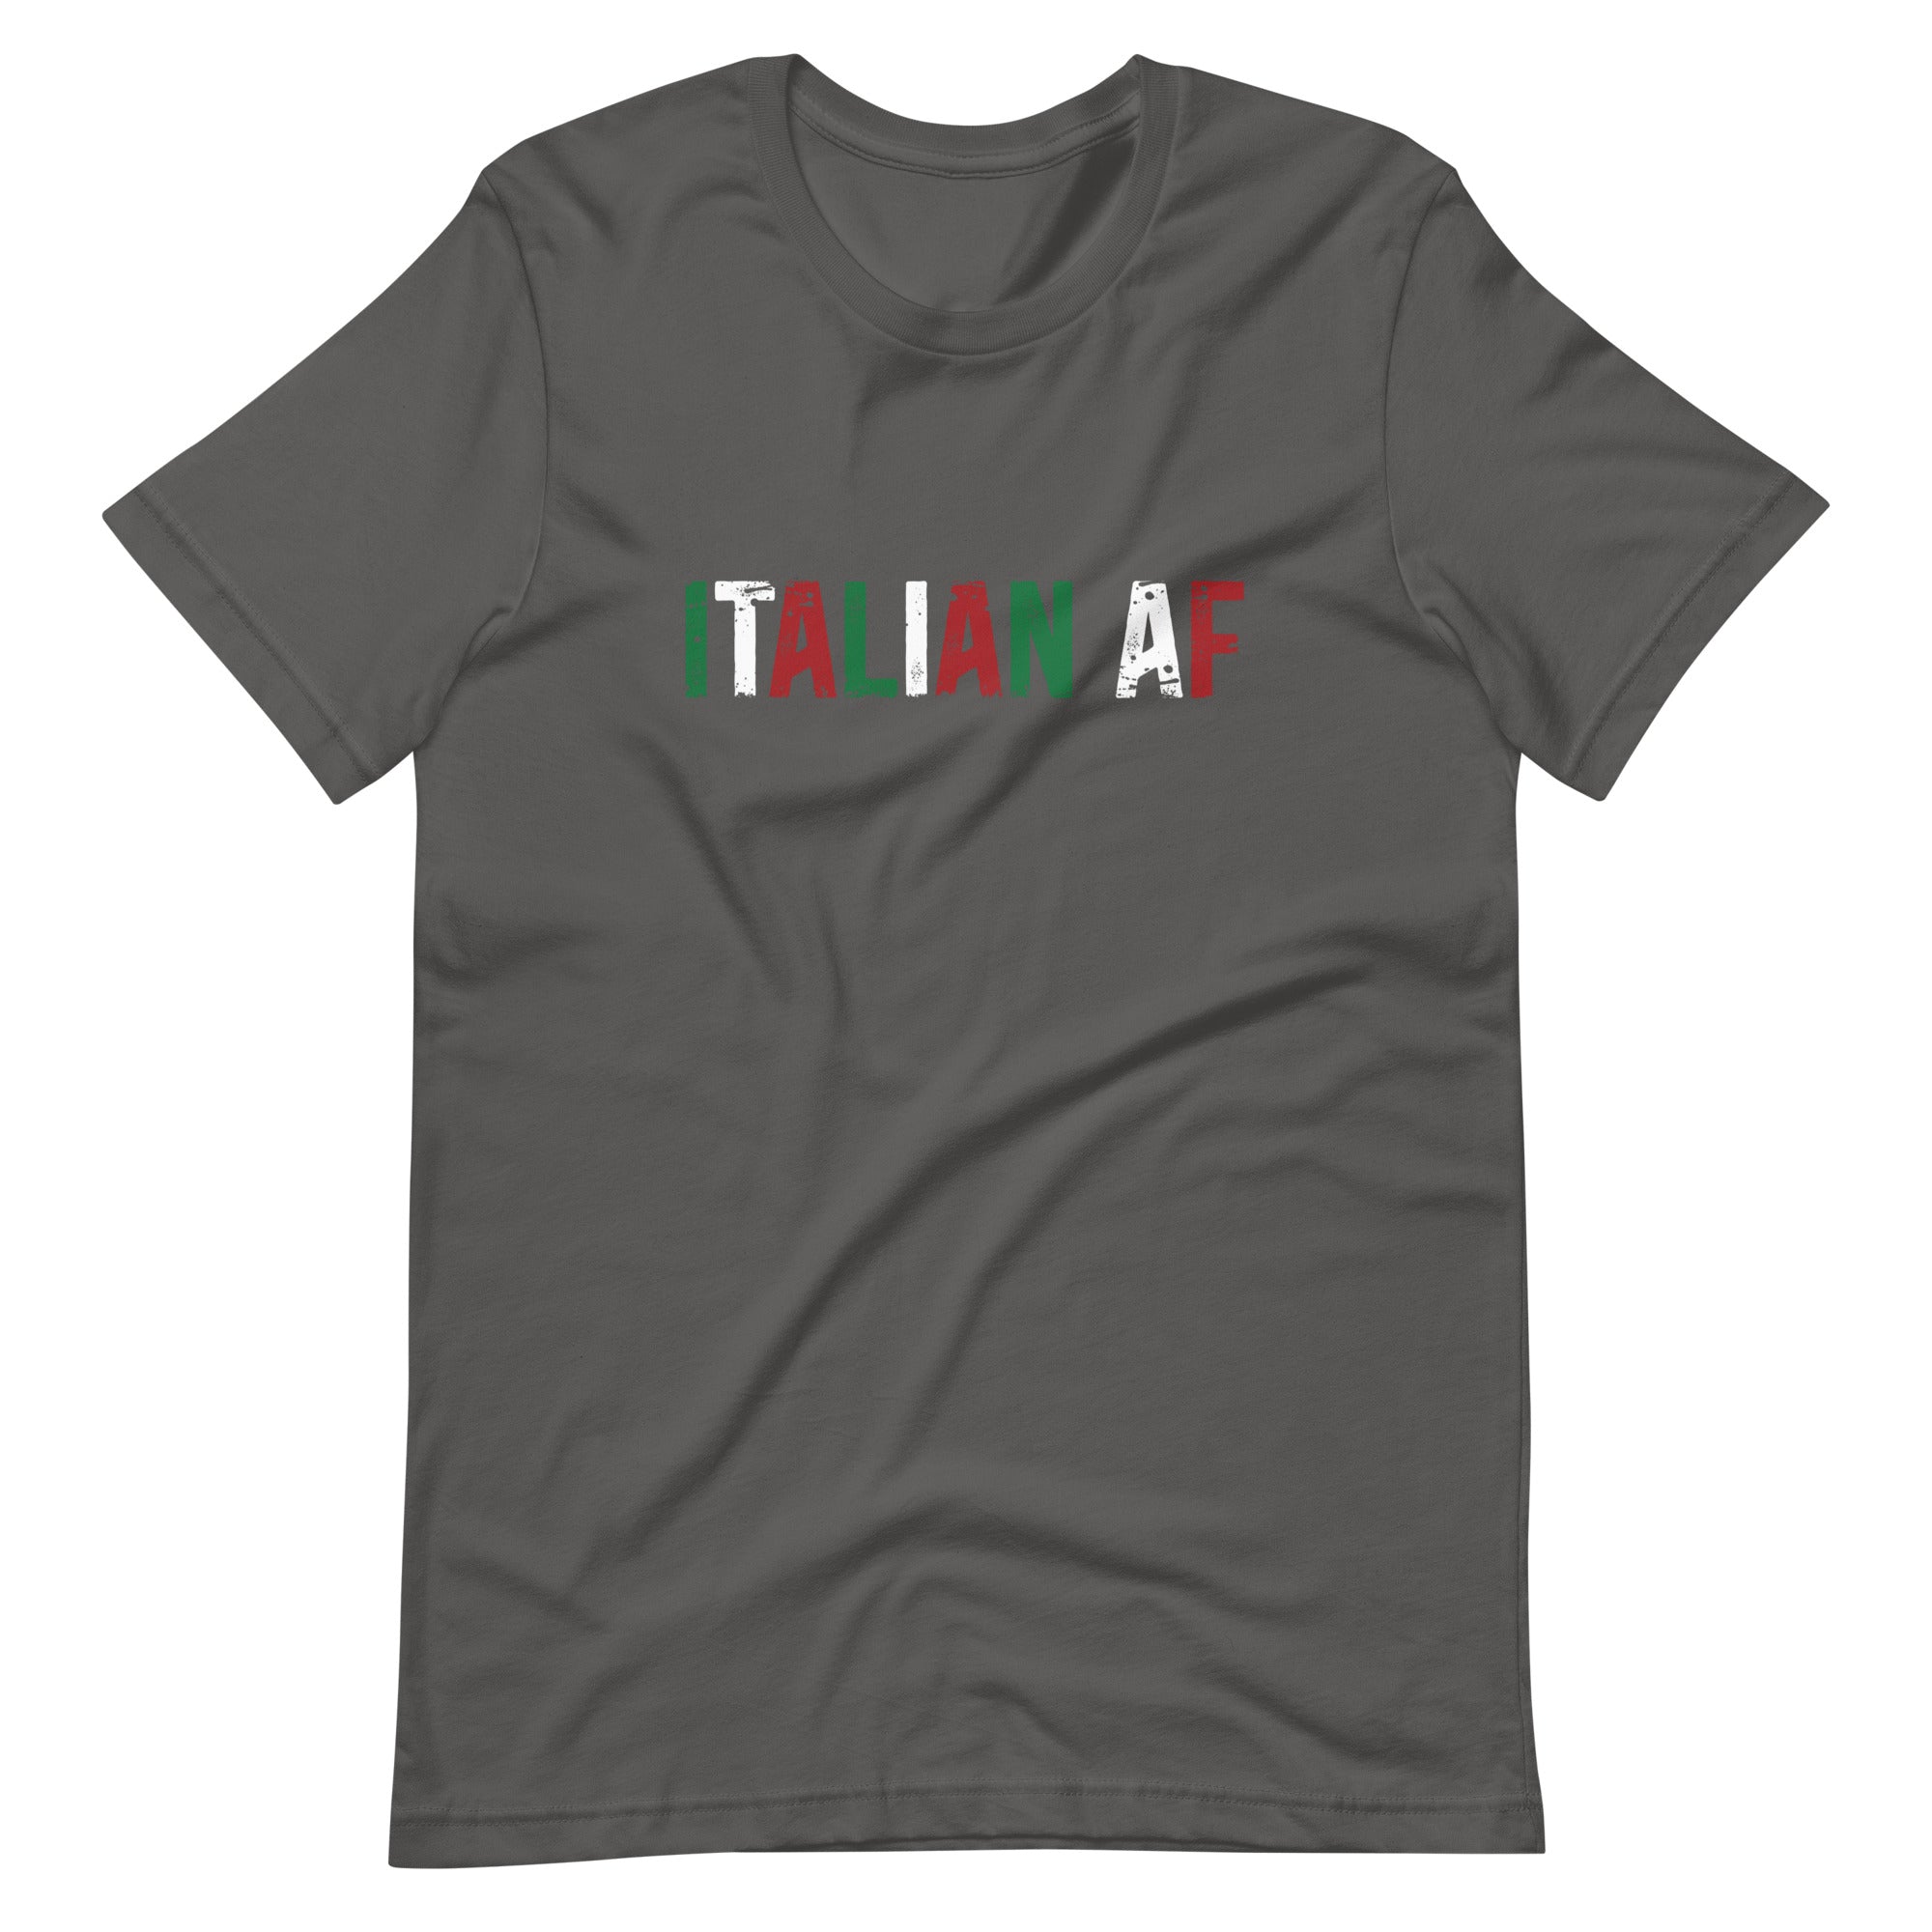 Mike Sorrentino Italian AF Shirt